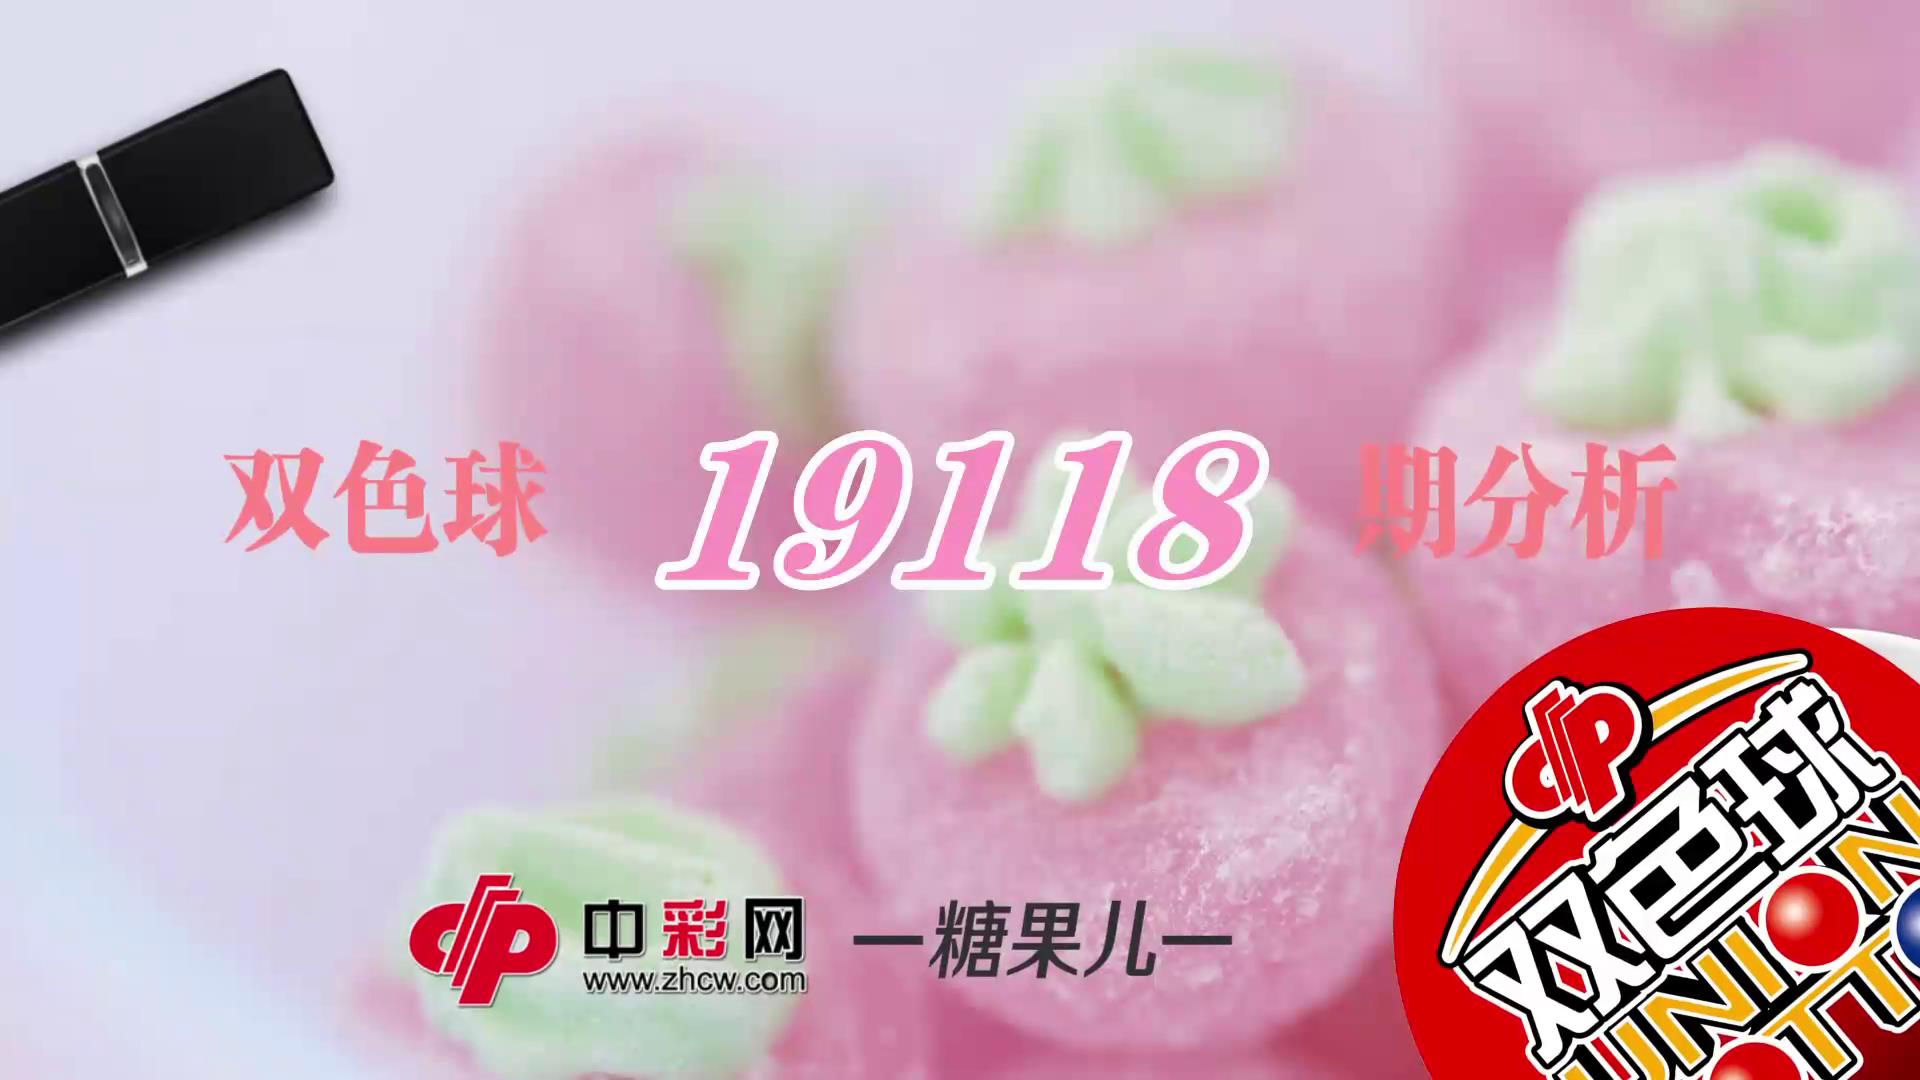 【中彩视频】糖果儿双色球第19118期